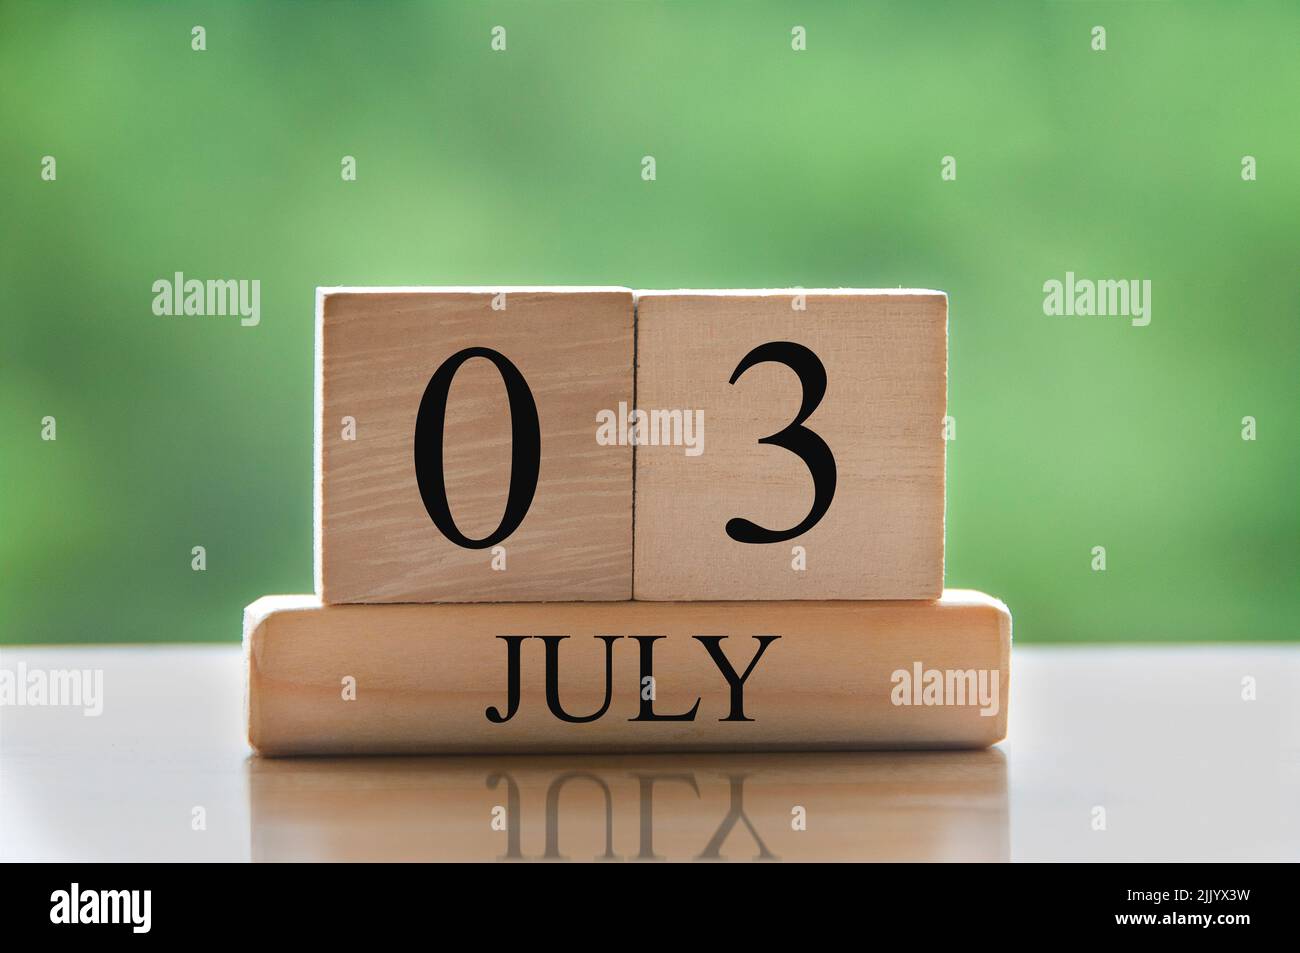 Fecha del calendario de julio de 3 texto sobre bloques de madera con parque de fondo borroso. Concepto de calendario Foto de stock